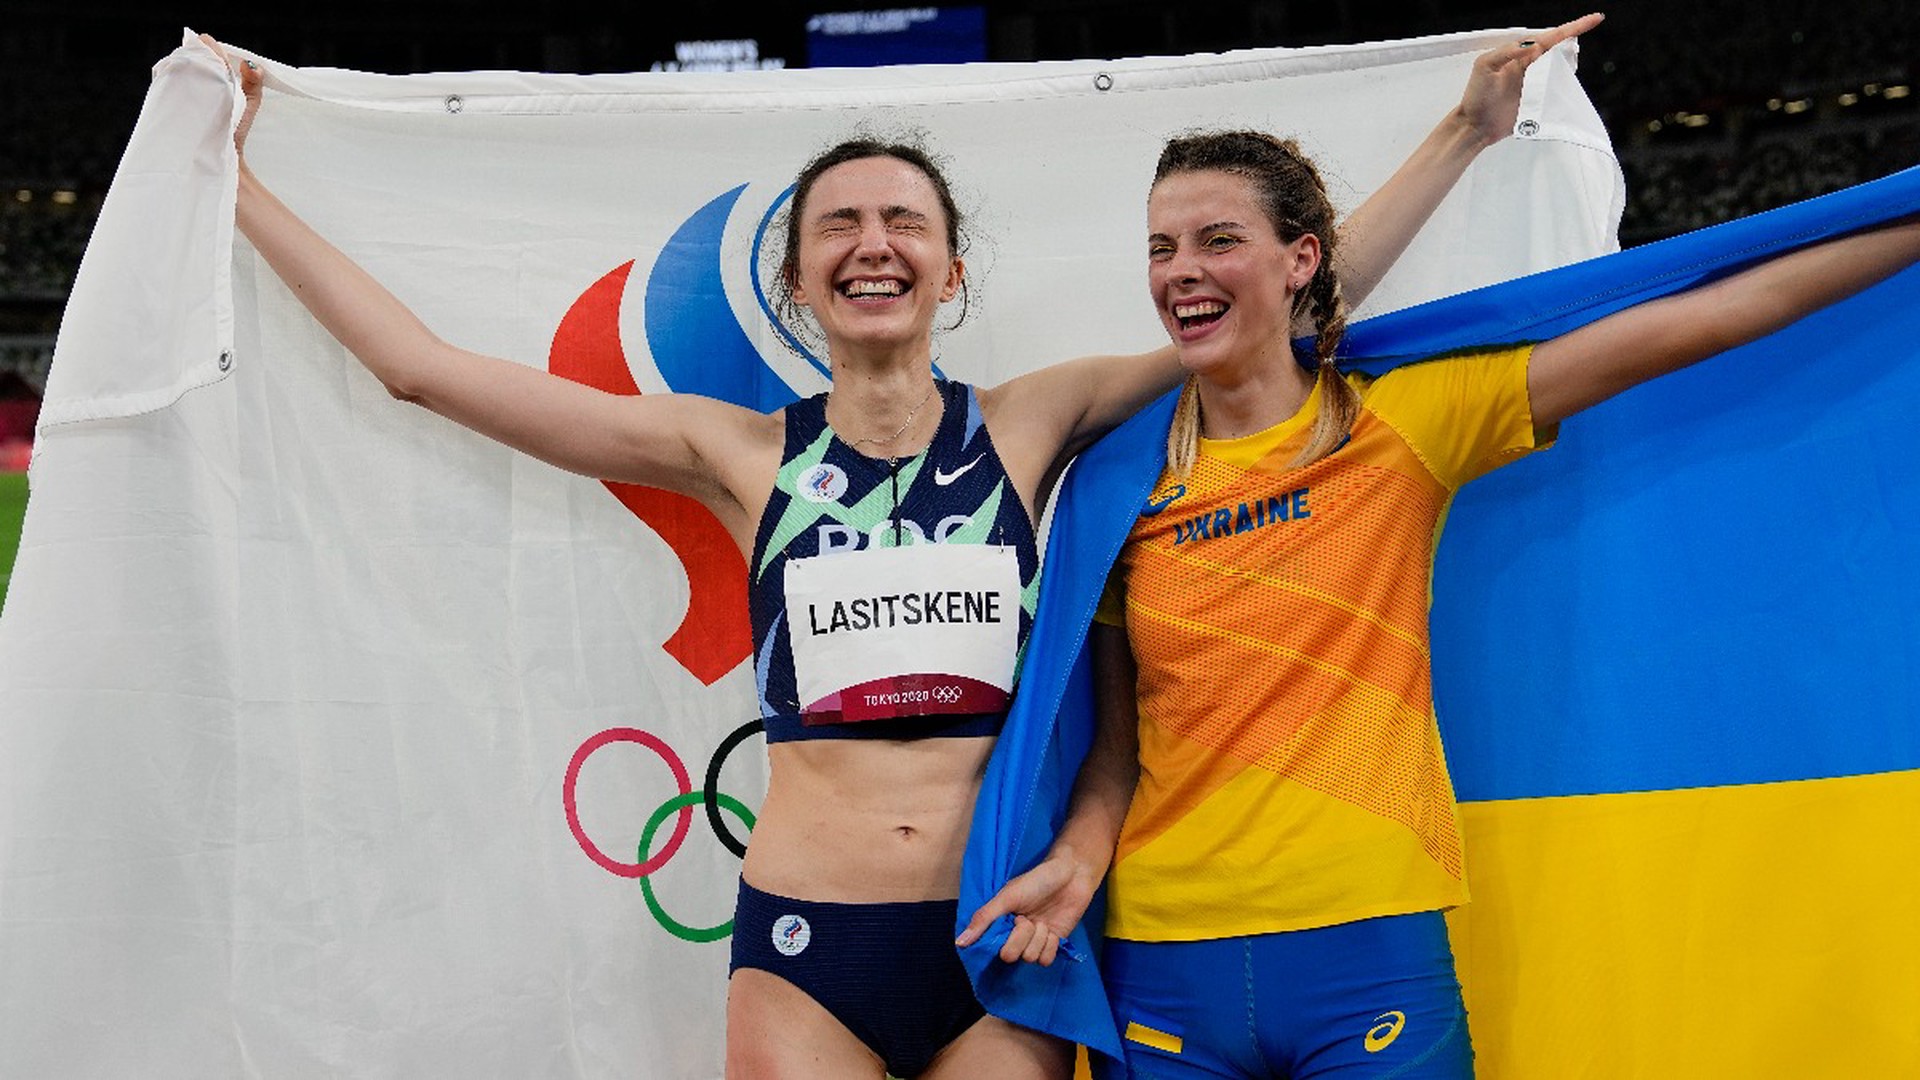 Украинская легкоатлетка Магучих заявила, что на ней клеймо из-за совместной фотографии с Ласицкене  